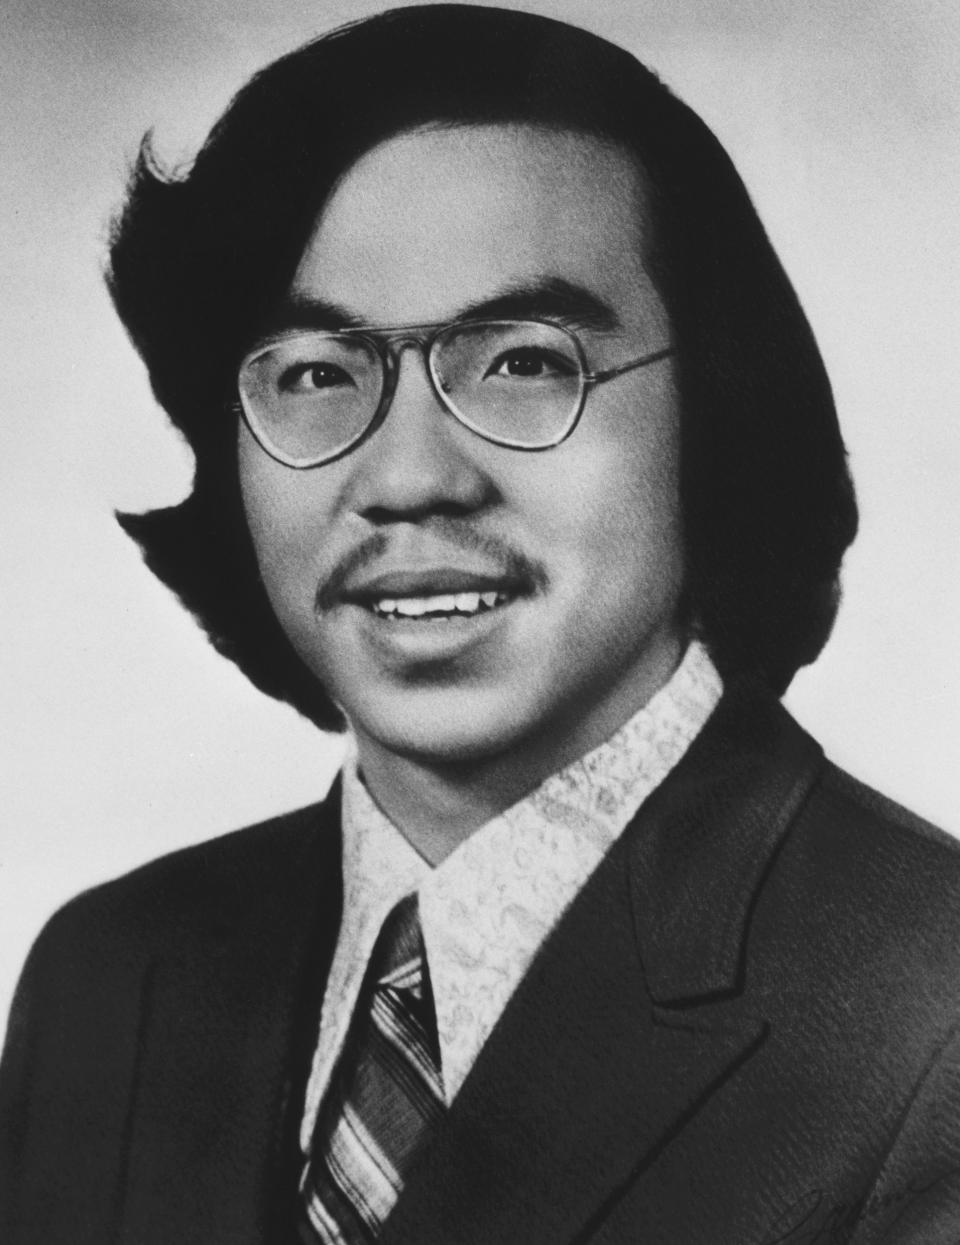 Portrait photo of Vincent Chin (Bettmann Archive / Getty Images)